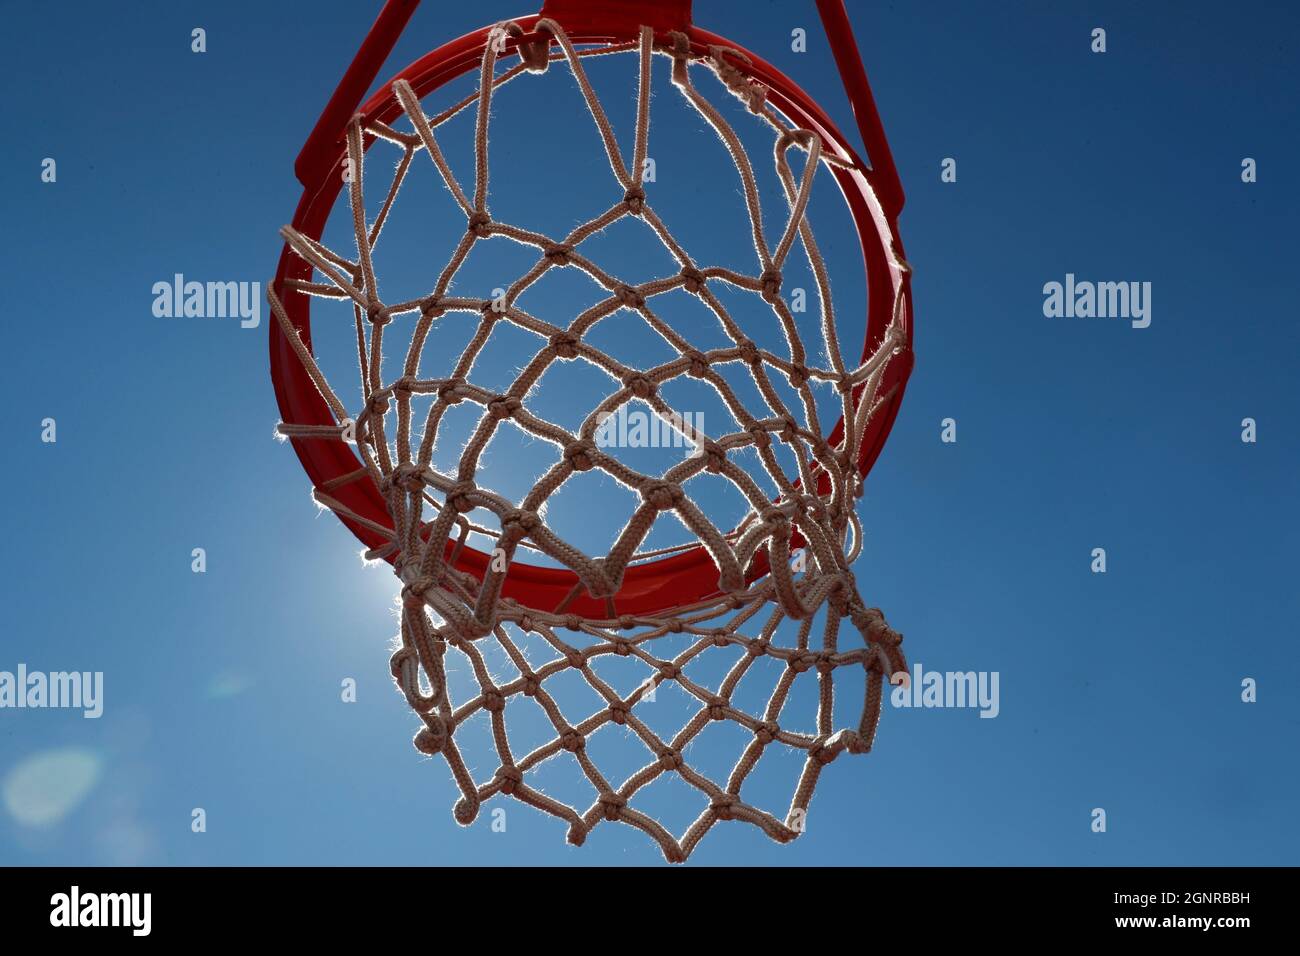 Sport. Korbballnetz gegen blauen Himmel. Les Houches. Frankreich. Stockfoto